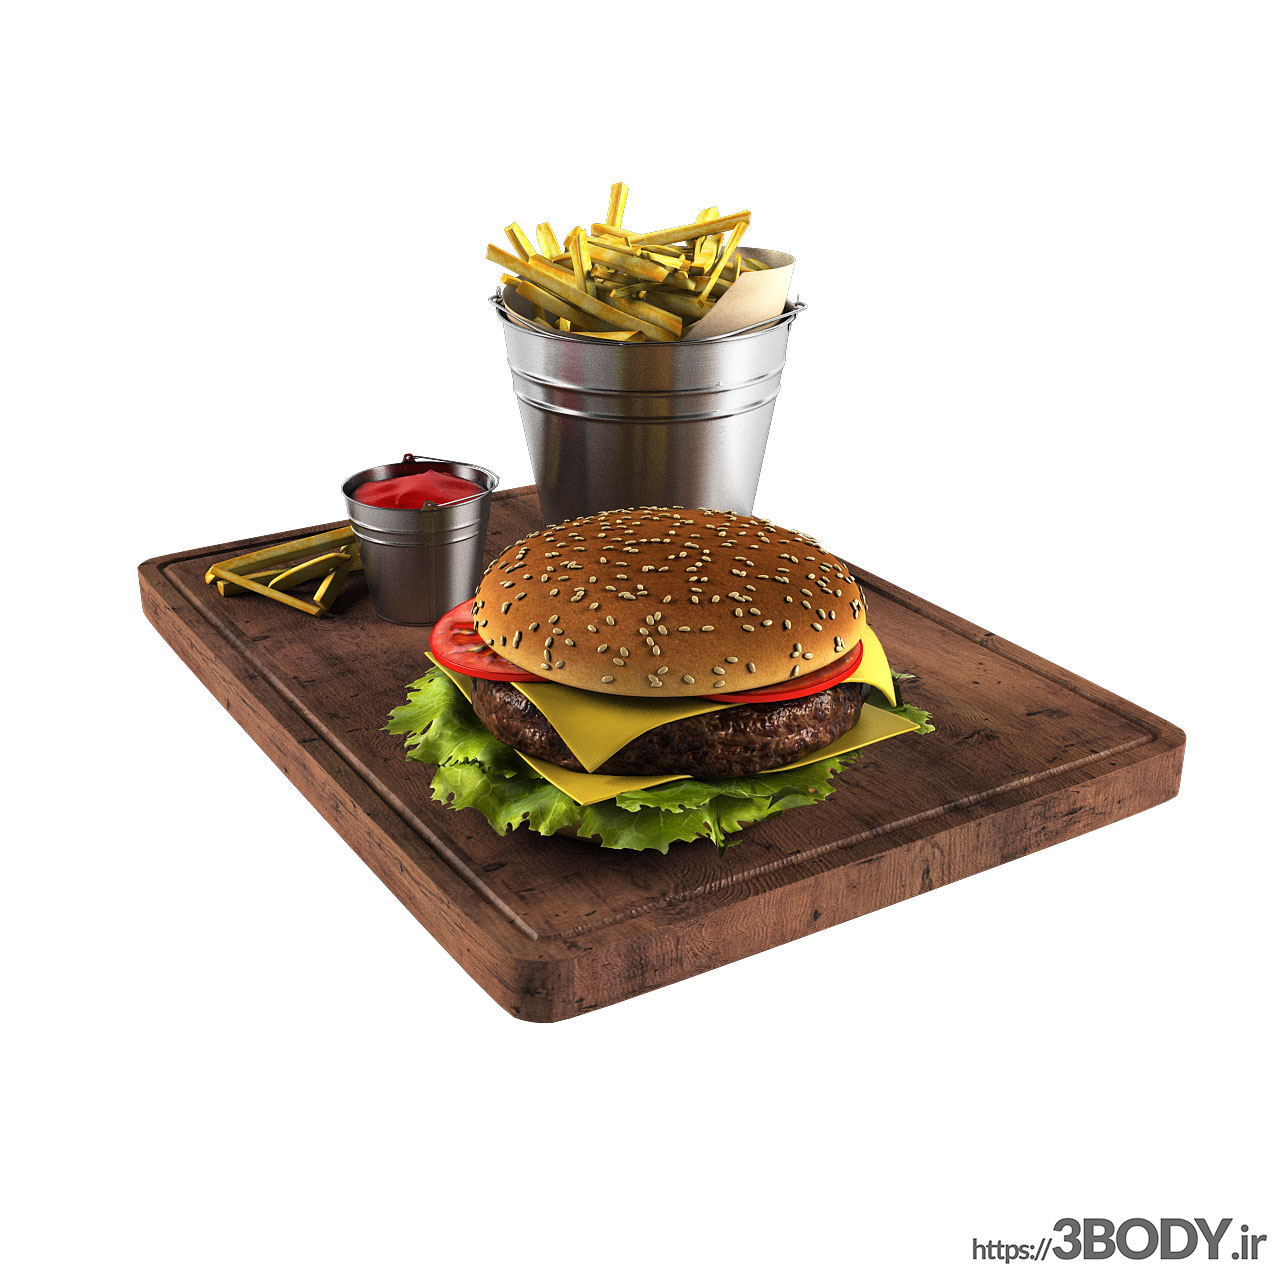 مدل سه بعدی همبرگر و سیب زمینی سرخ کرده عکس 1